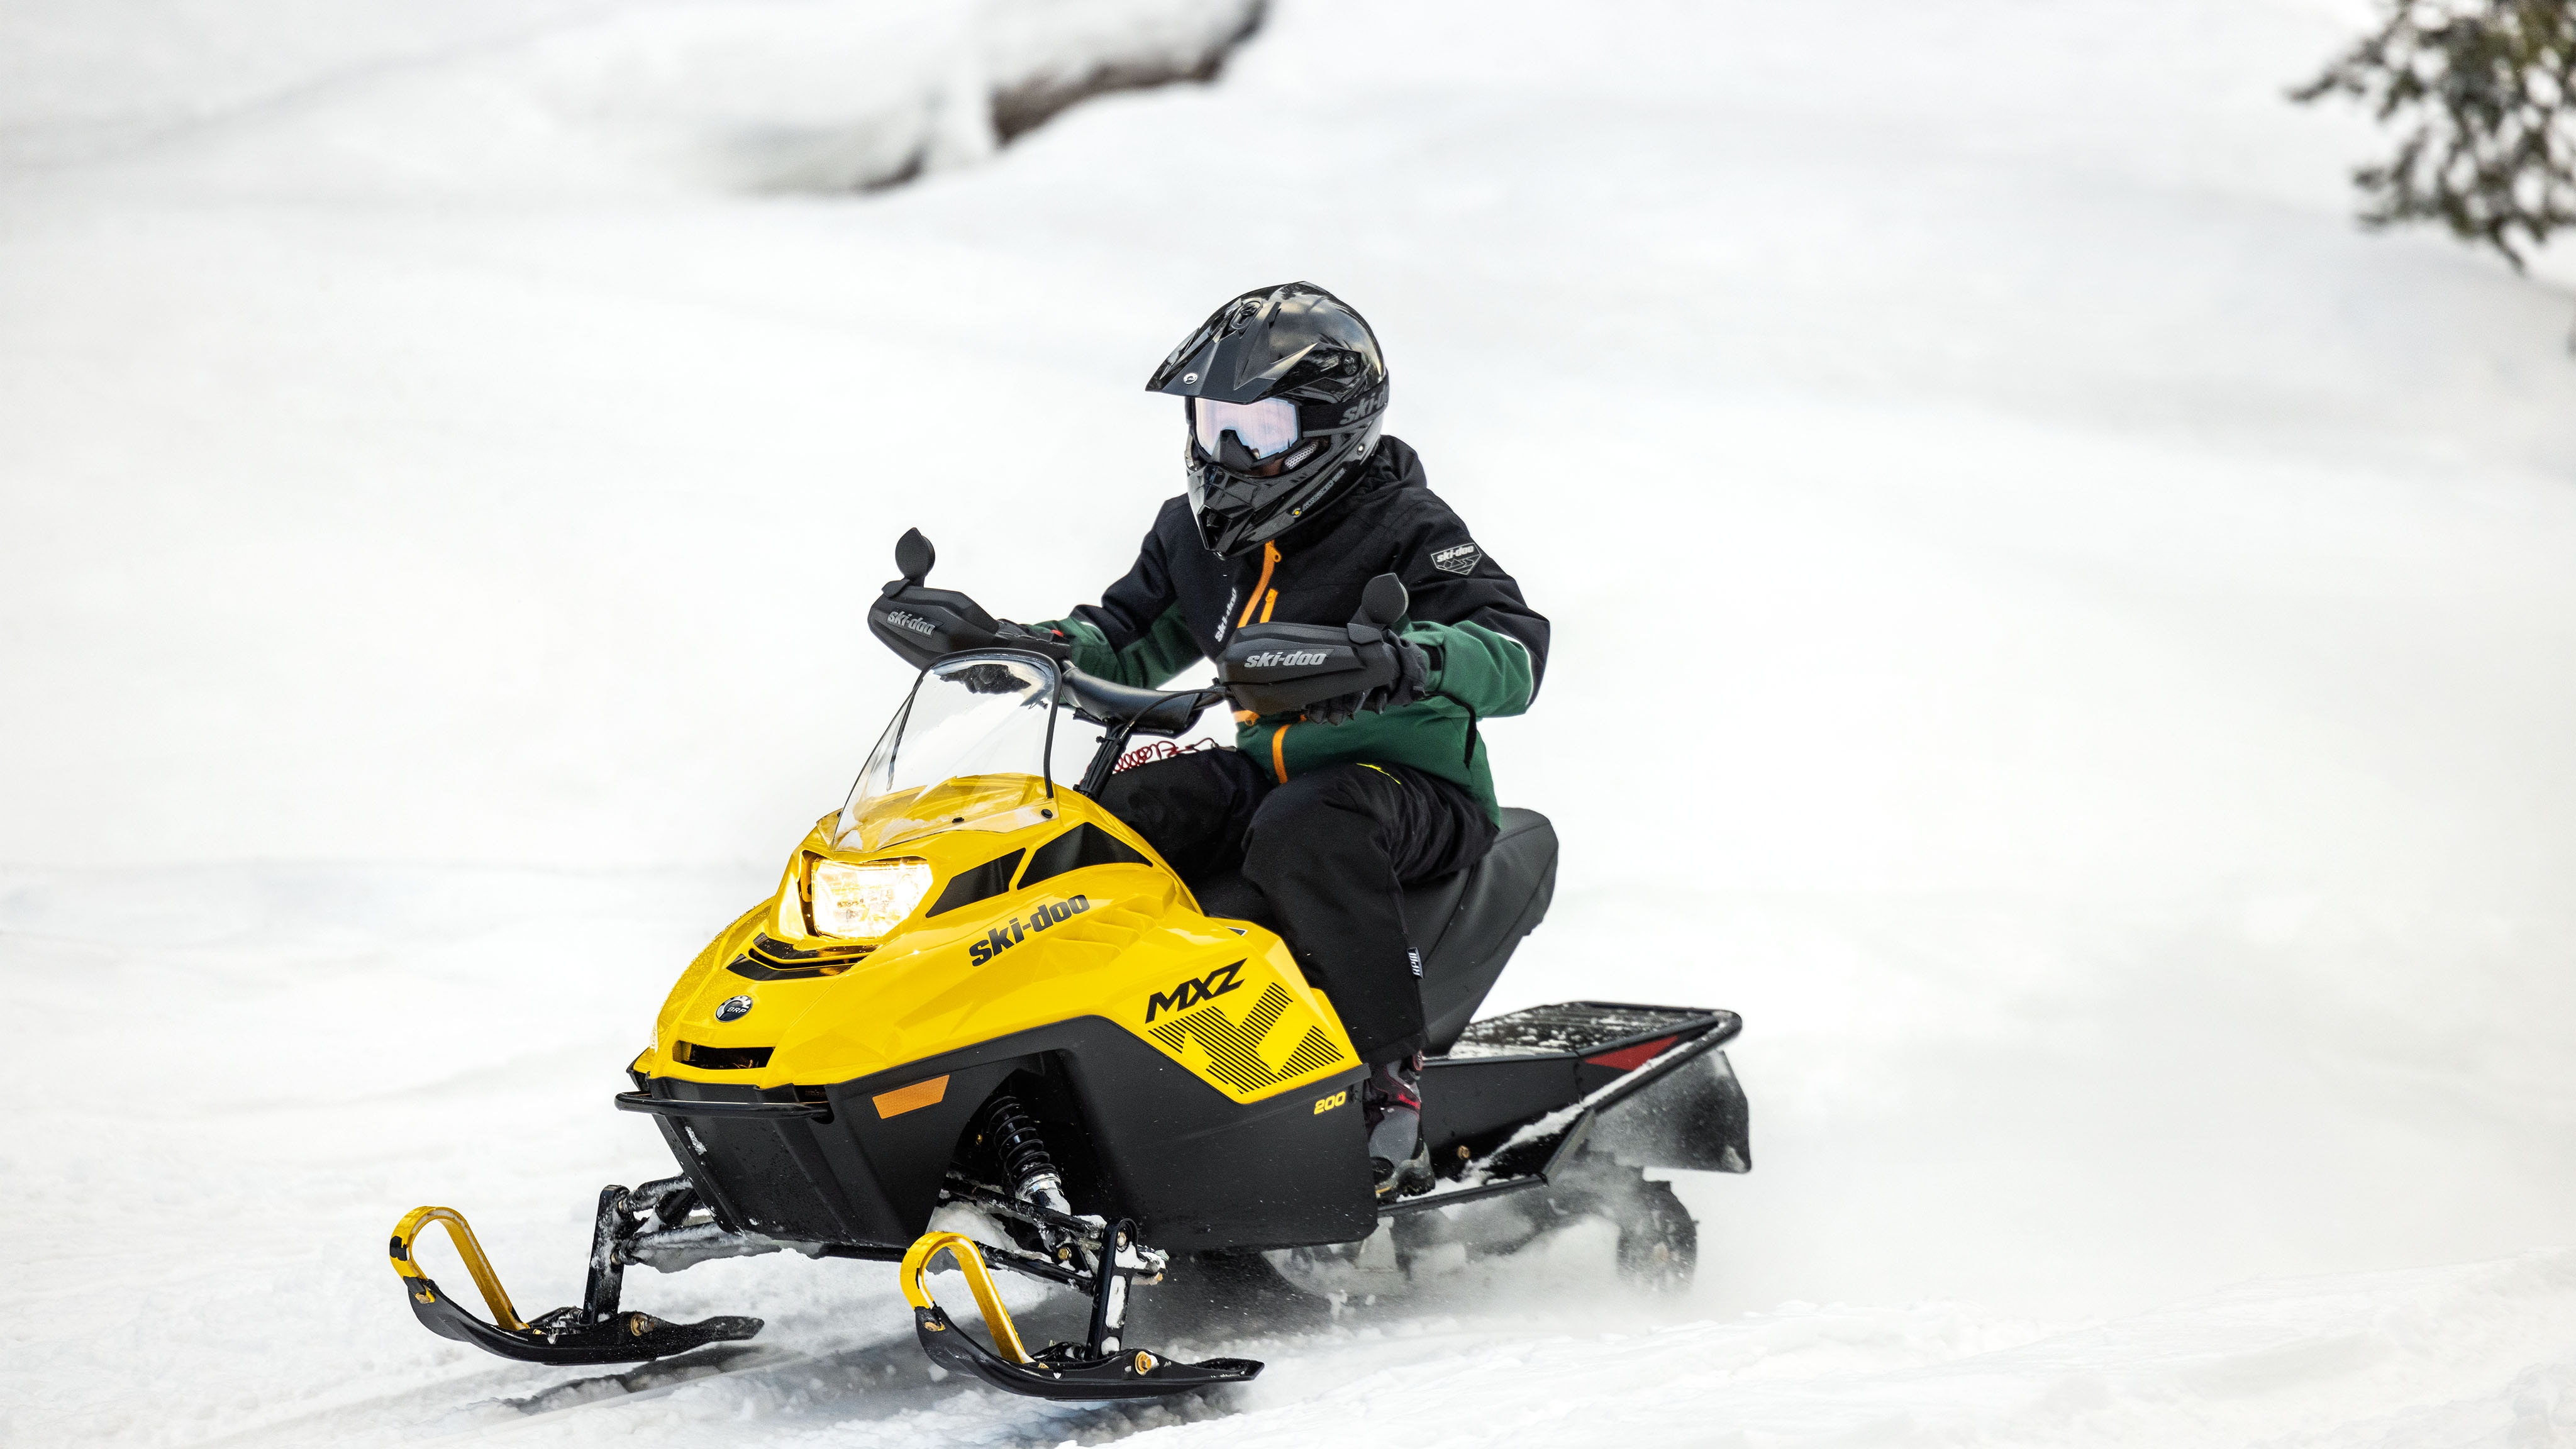 Ski-Doo MXZ 200'e binen genç sürücü, YOUTH Kar Motoru